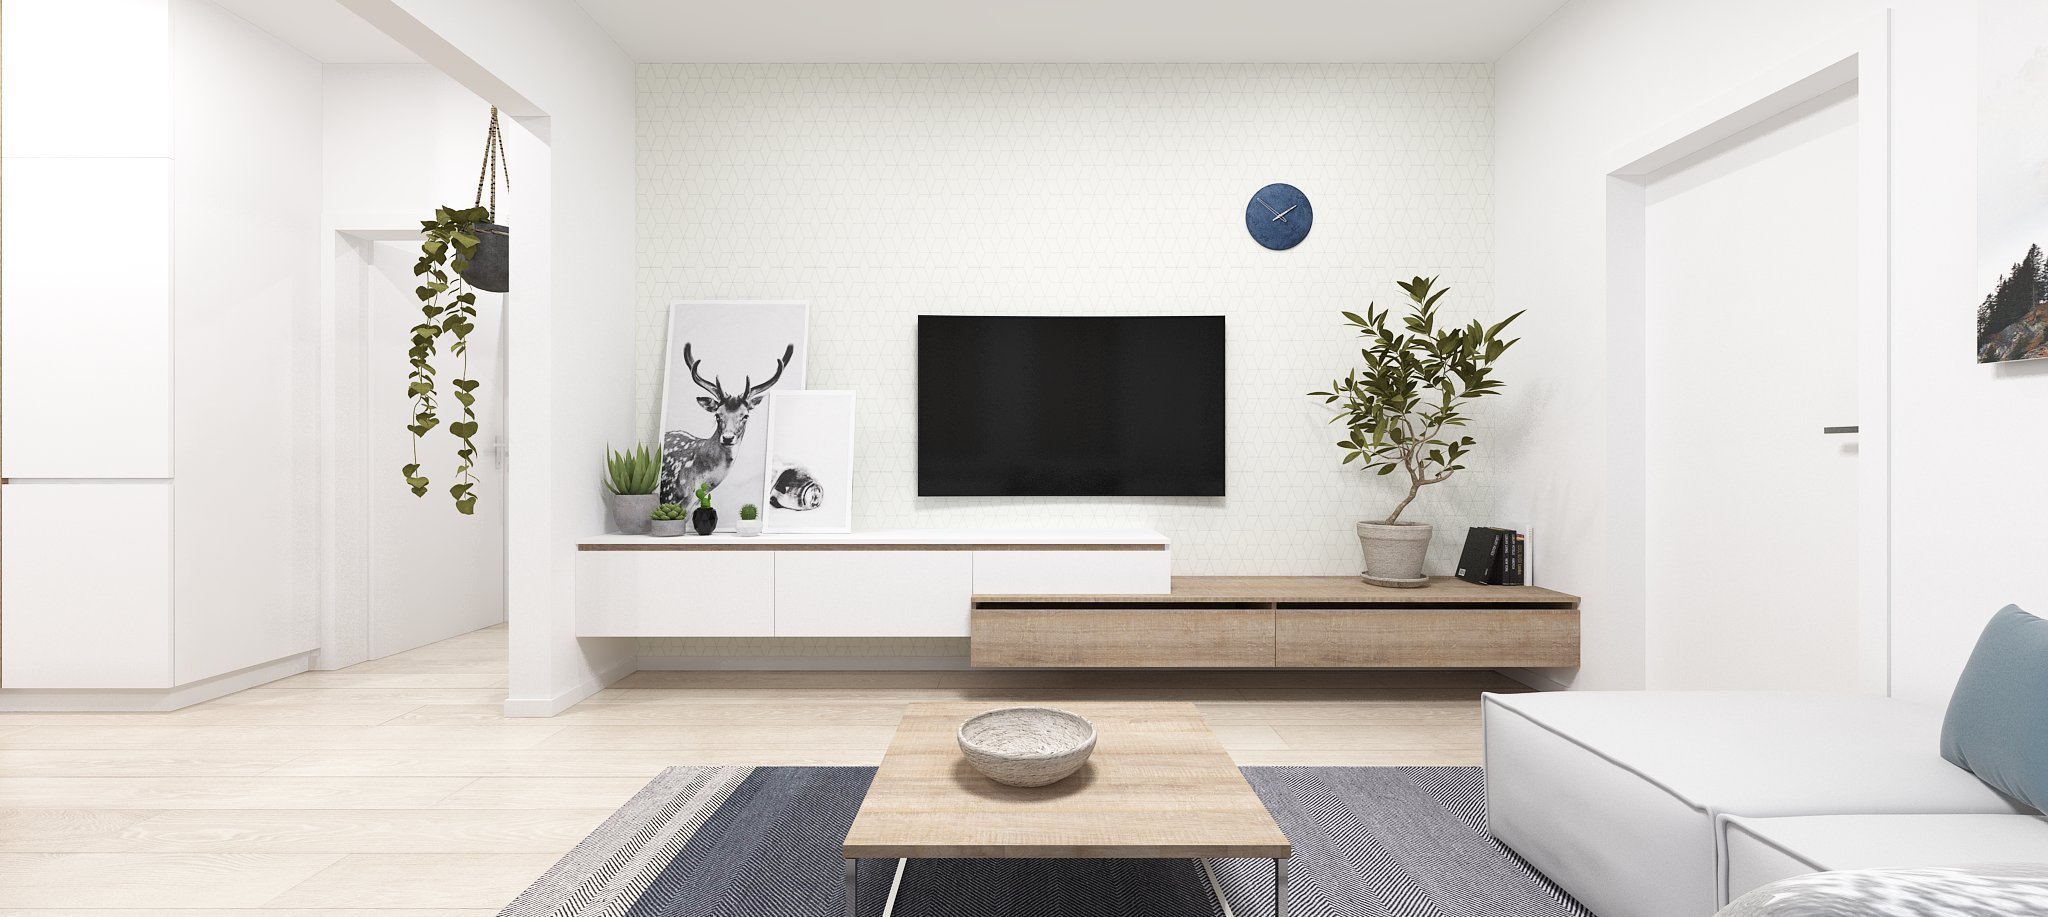 Zrekonštruovaný byt v Ružinove je založený na jednoduchosti, čistote a funkčnosti. Celý koncept je inšpirovaný vzdušným štýlom škandinávskych interiérov, ktoré…